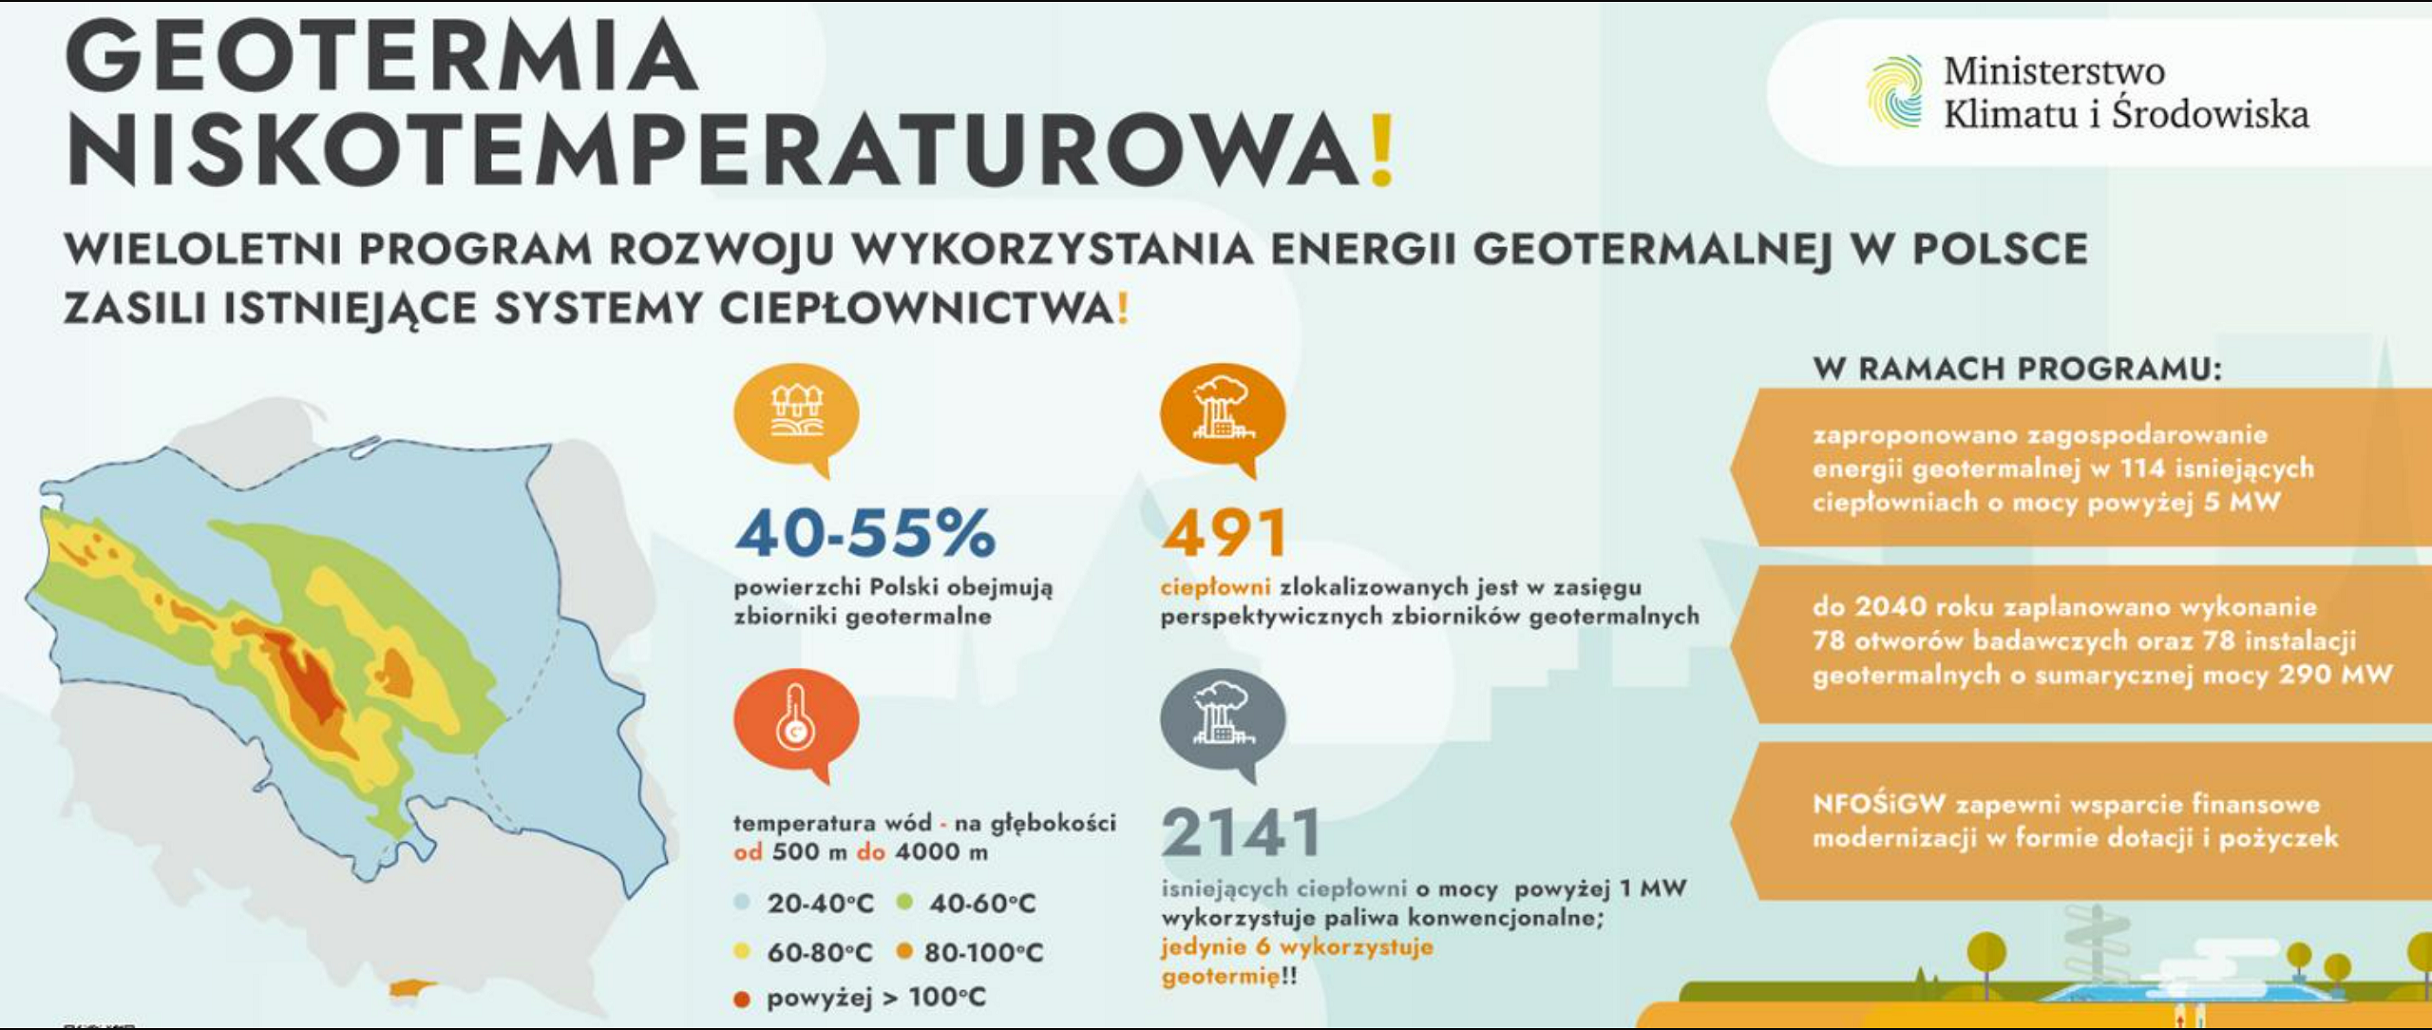 Polski rząd przygotowuje mapę drogową rozwoju geotermii